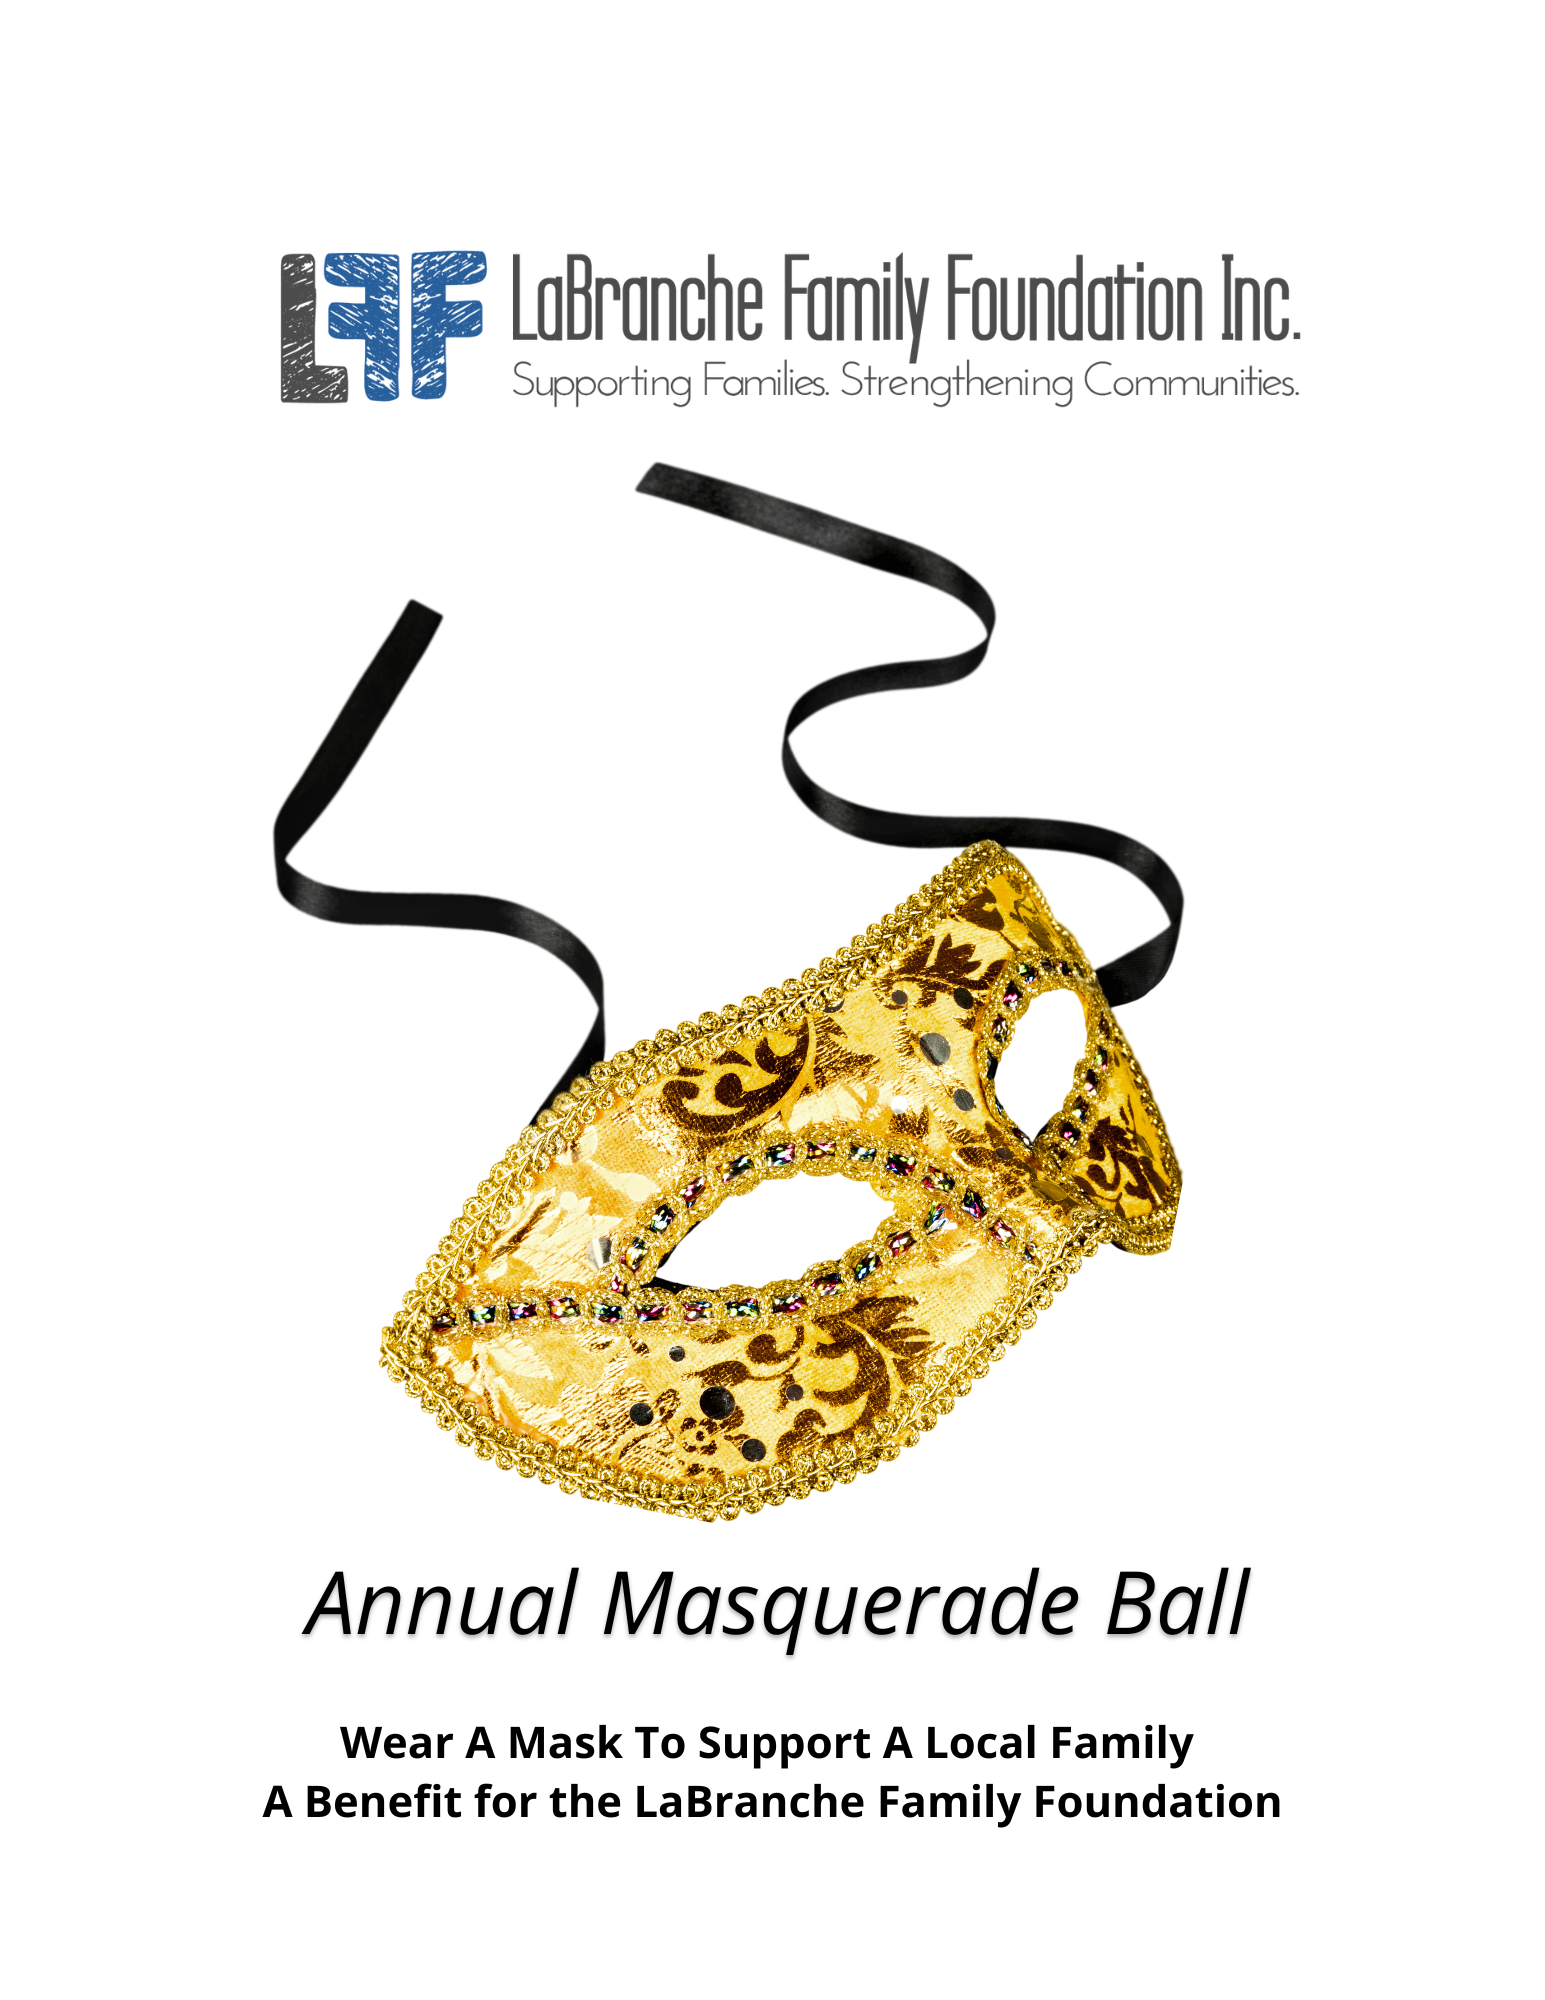 LaBranche Family Foundation Inc 6th Annual Masquerade Ball

